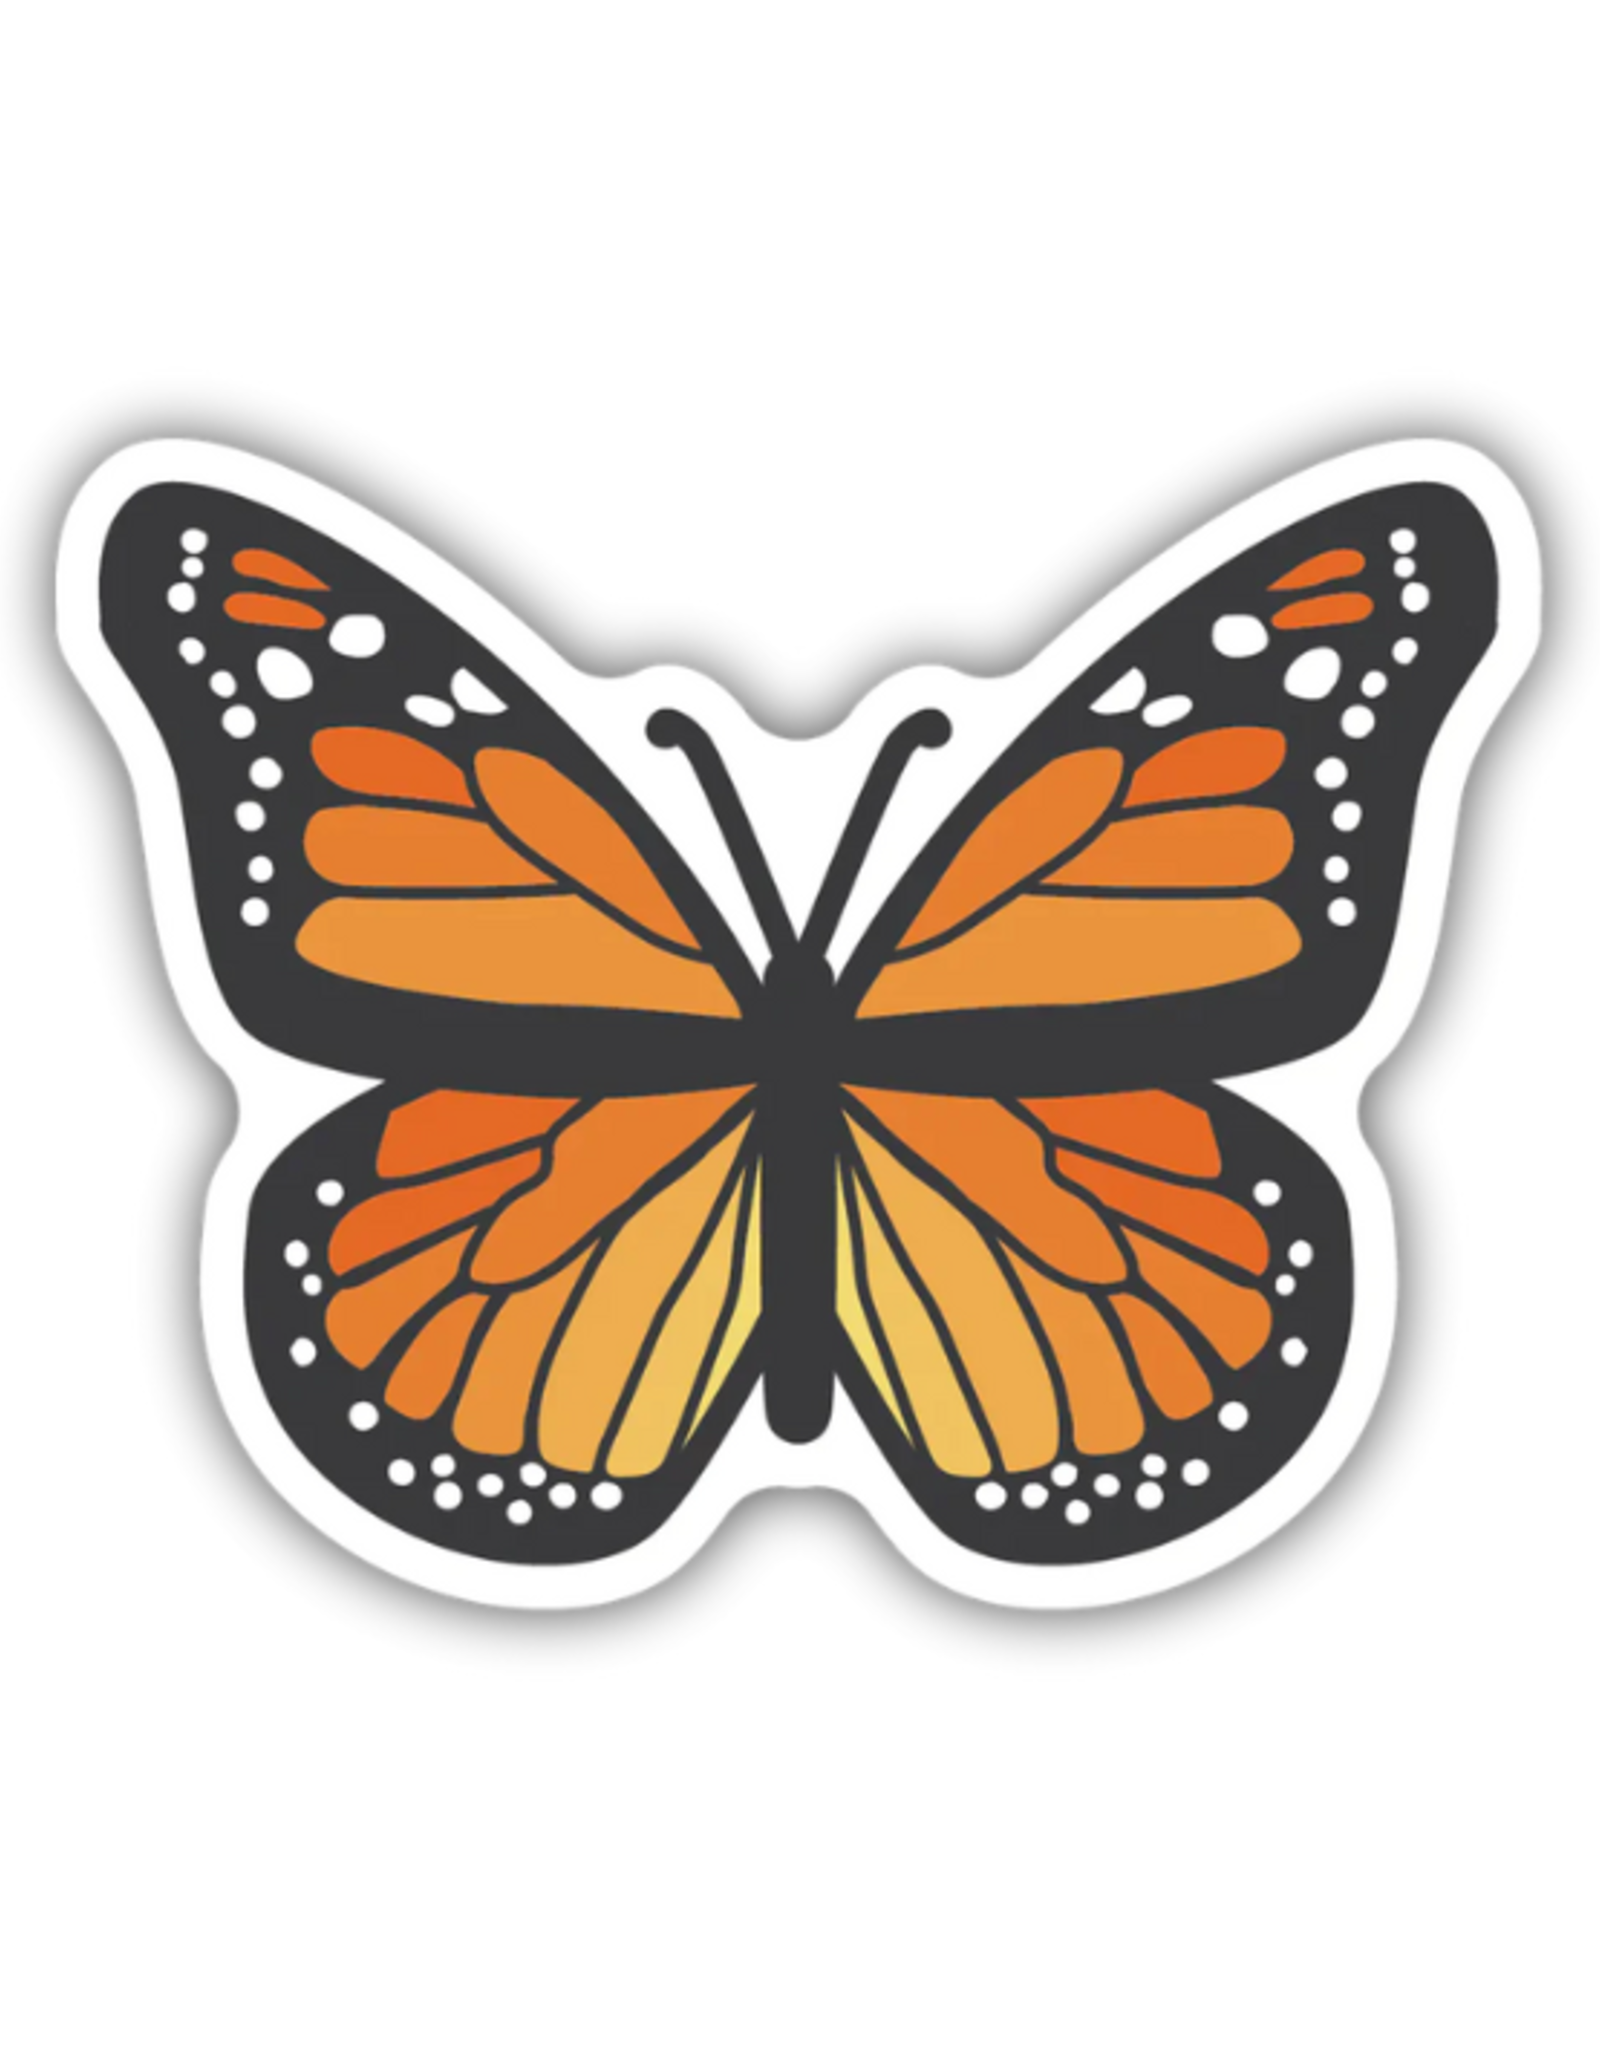 Stickers Northwest Inc. Stickers Northwest Inc. - Monarch Butterfly Sticker